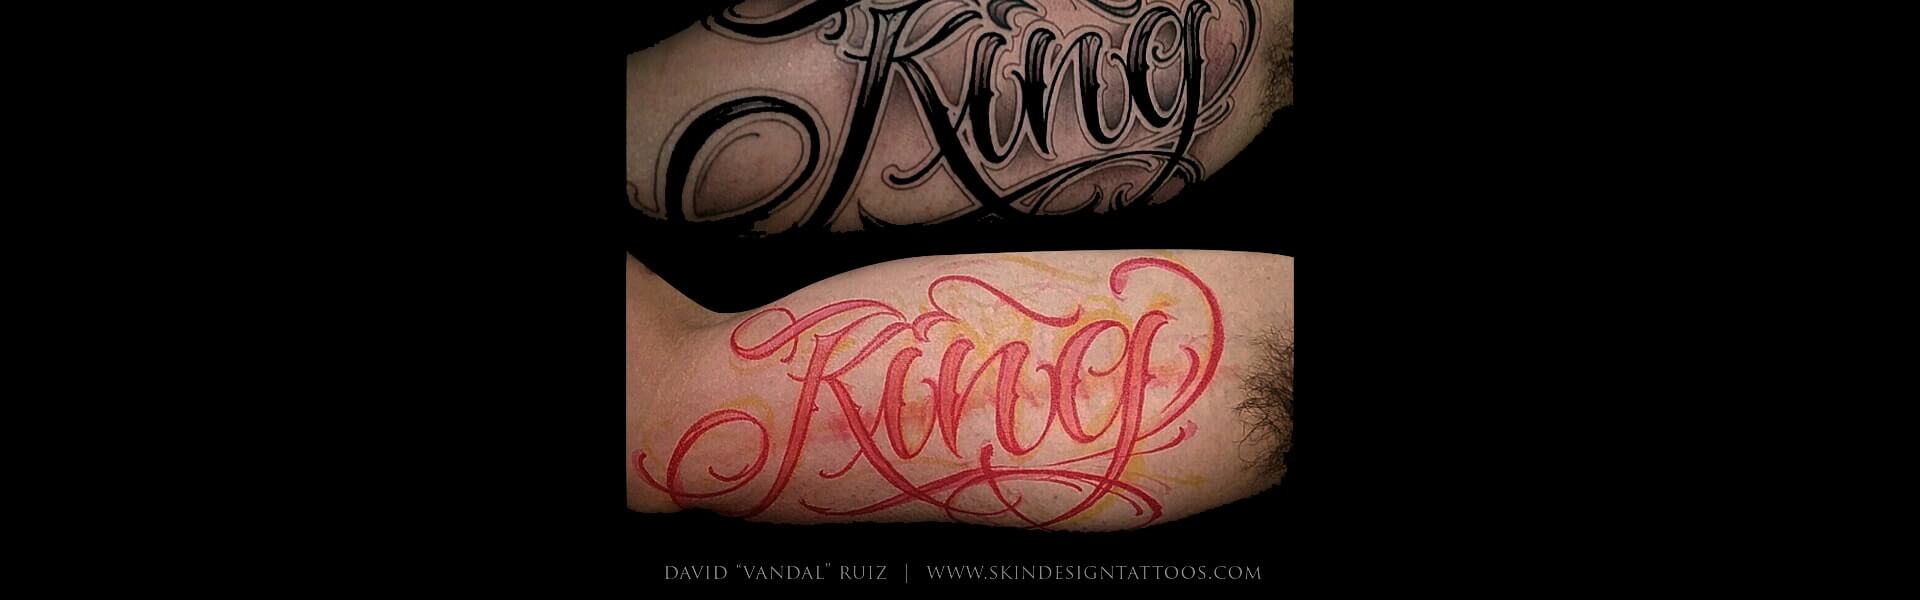 Gangster Tattoos Png  Tattoo Lettering Fonts Transparent Png   Transparent Png Image  PNGitem